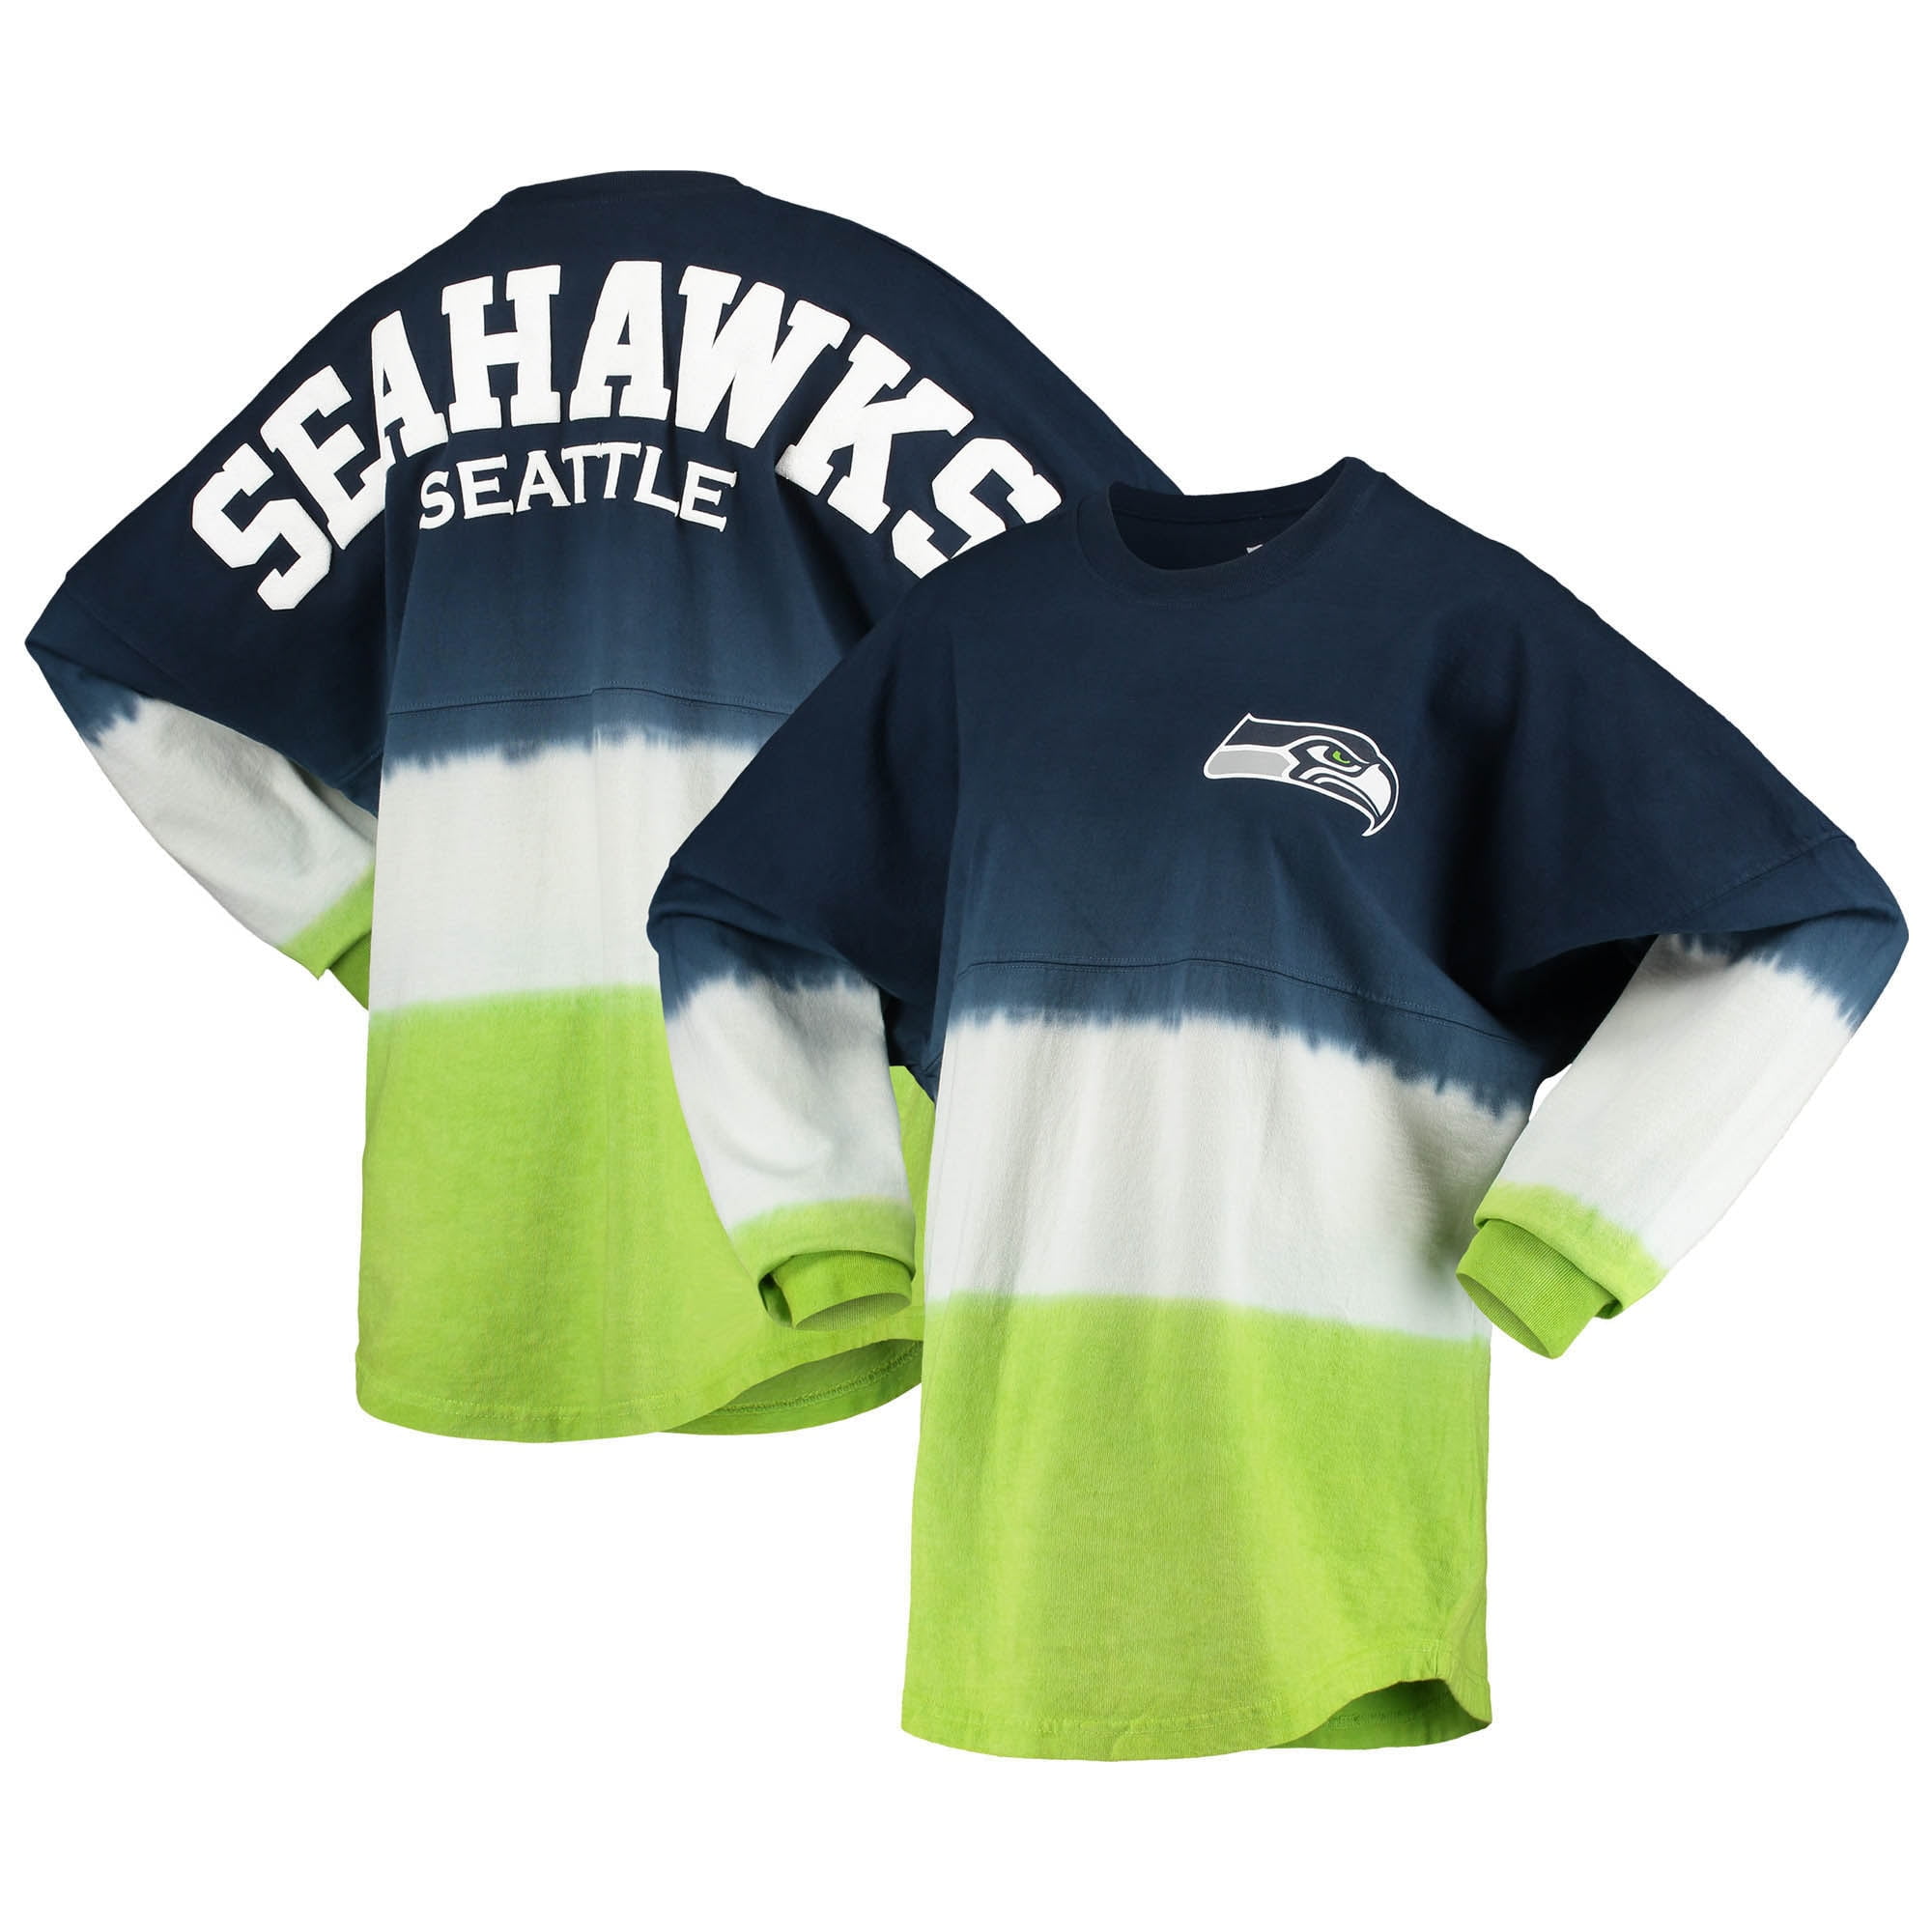 seattle seahawks women's t shirt